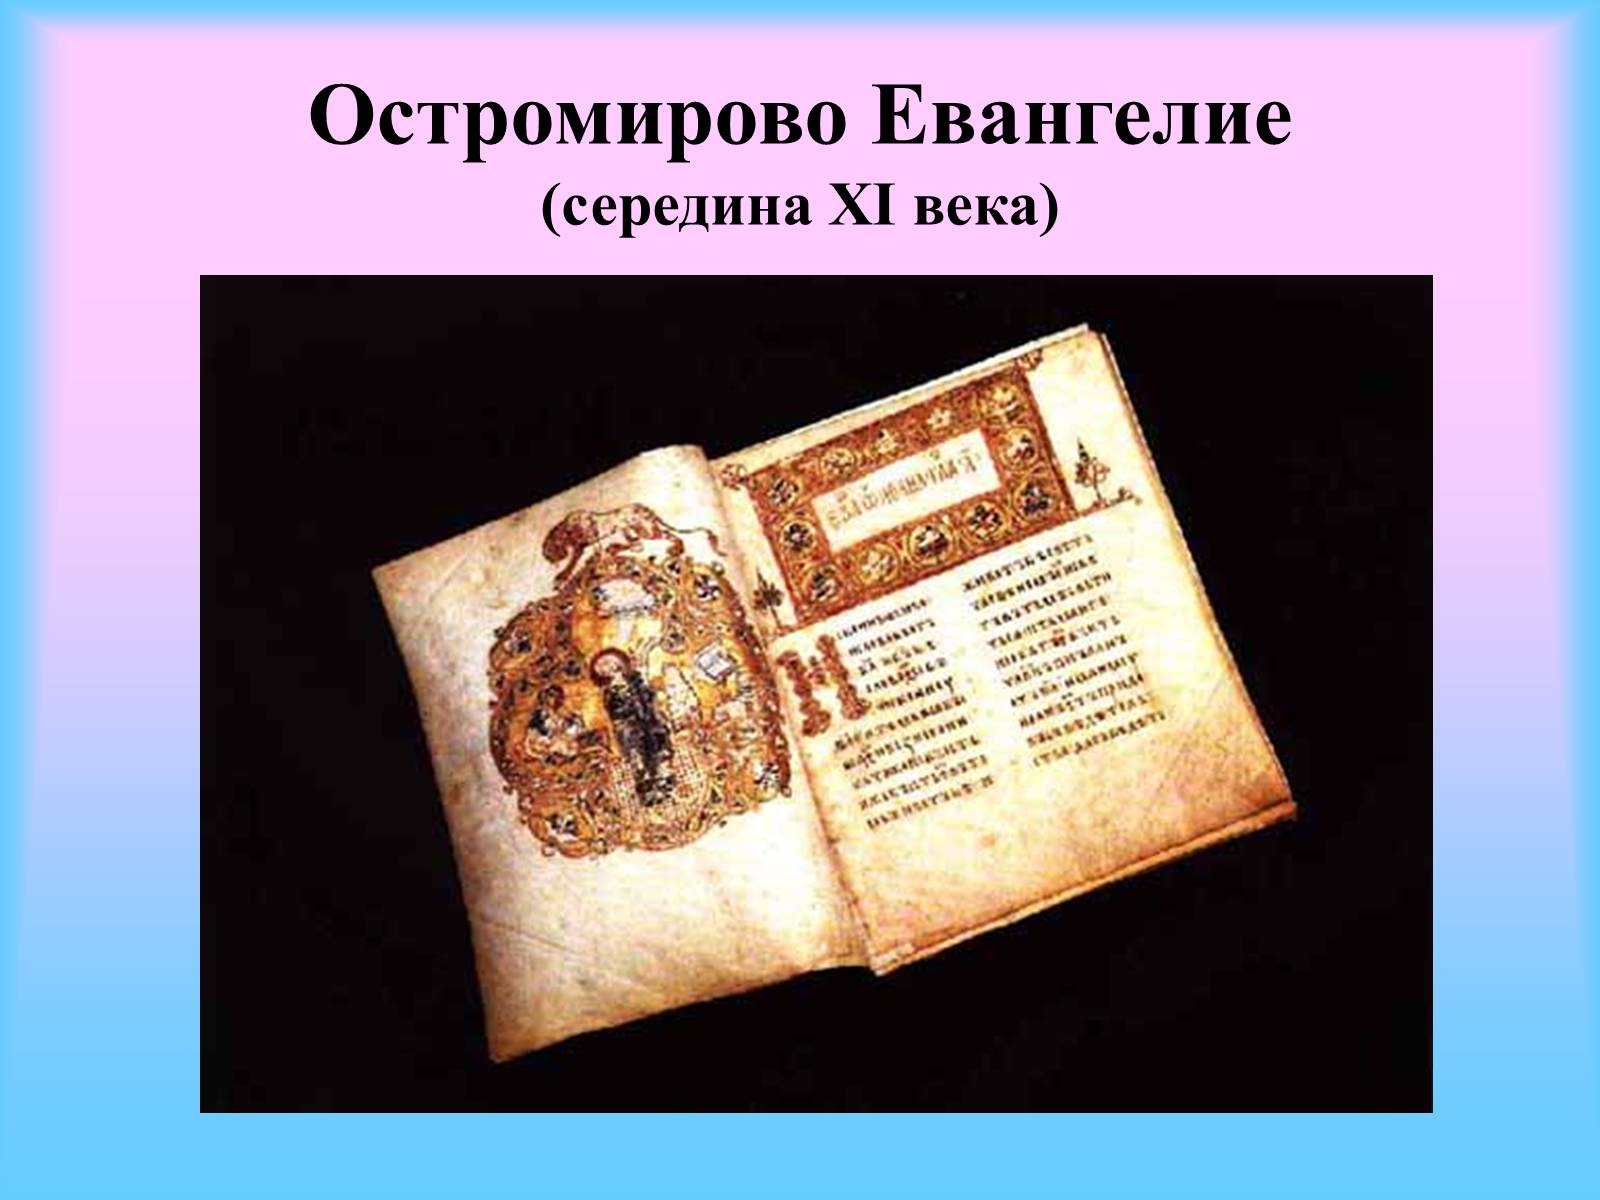 Рукописная книга «Остромирово Евангелие»